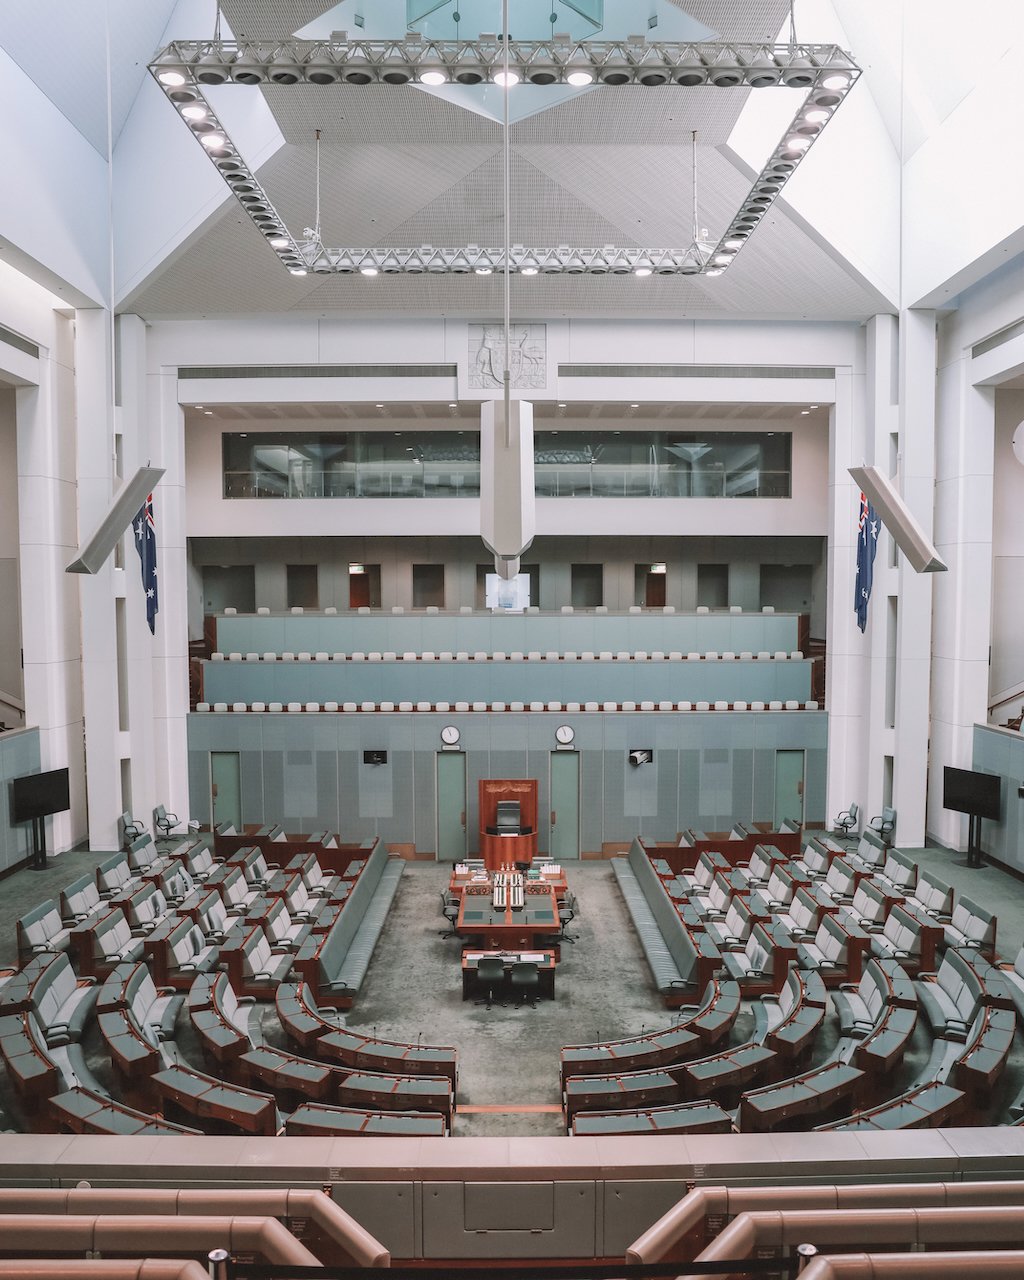 La chambre des députés - Parlement australien - Canberra - Territoire de la capitale australienne (ACT) - Australie